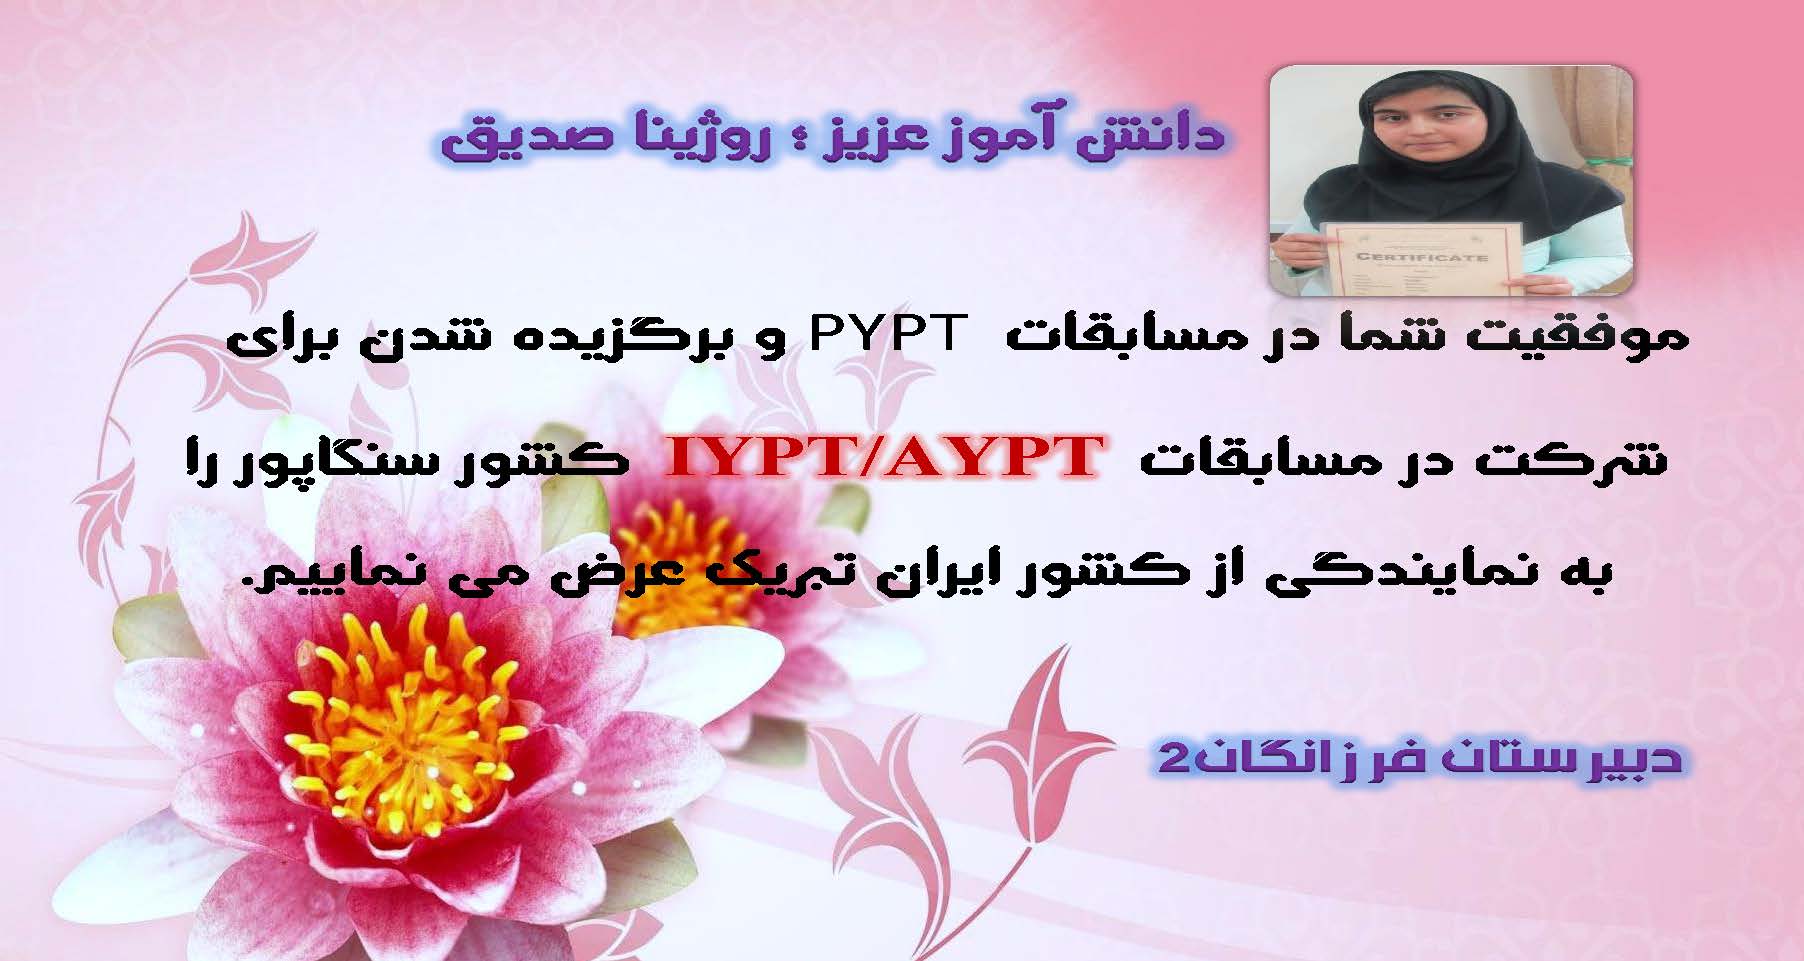 پیام تبریک دبیرستان فرزانگان 2 به دانش آموز روژینا صدیق نماینده کشور ایران در مسابقات IYPT